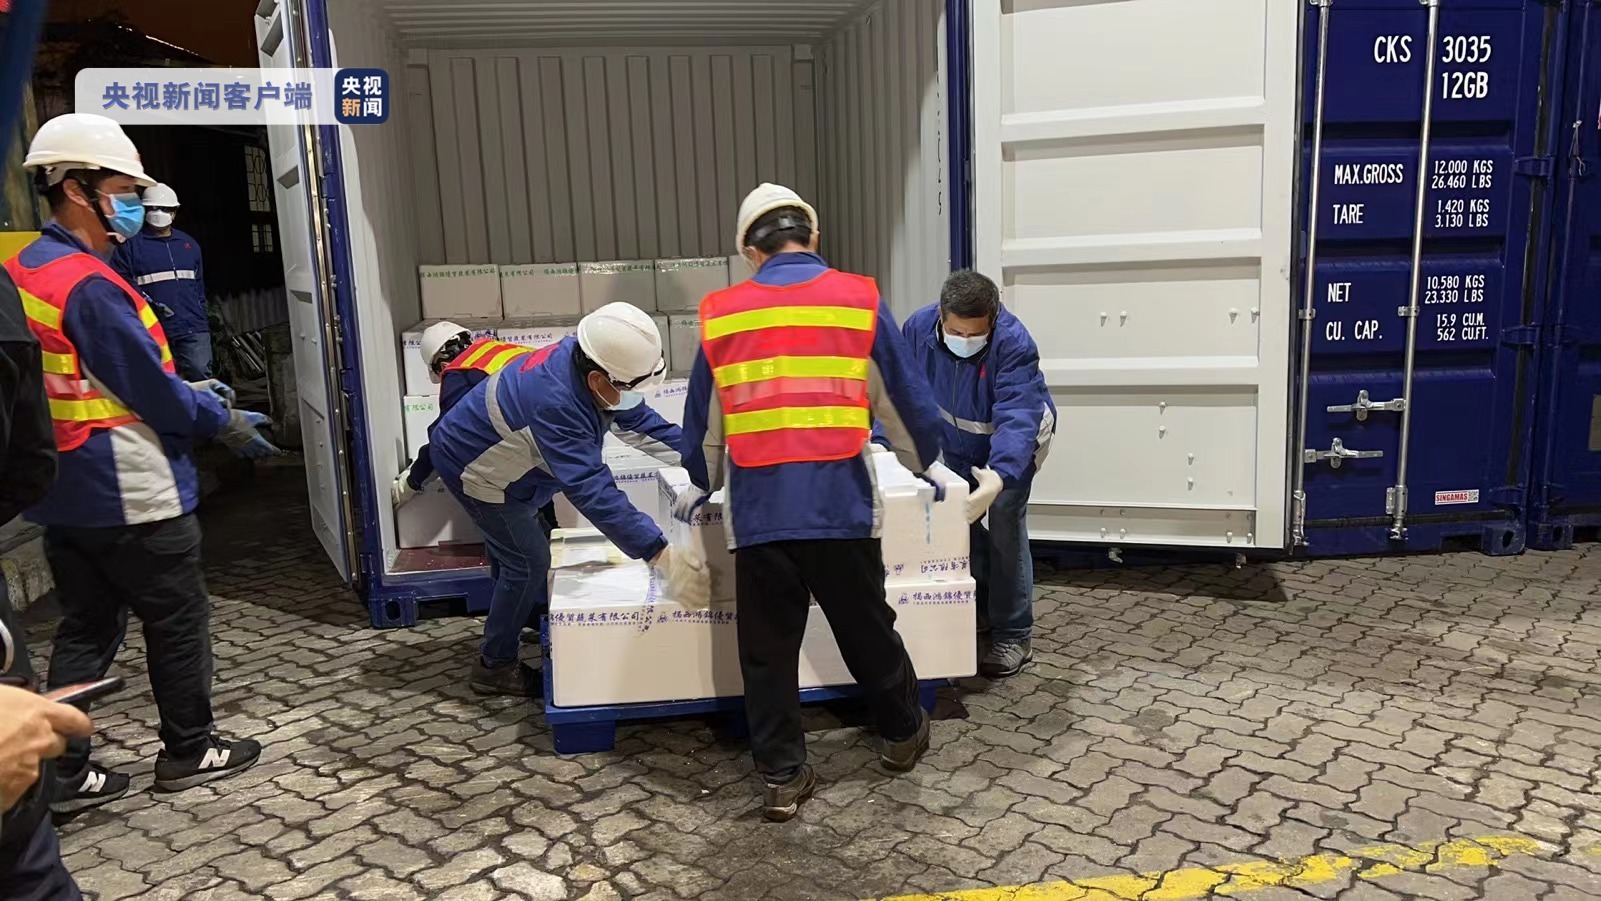 首批供港水运应急保障通道物资抵达香港